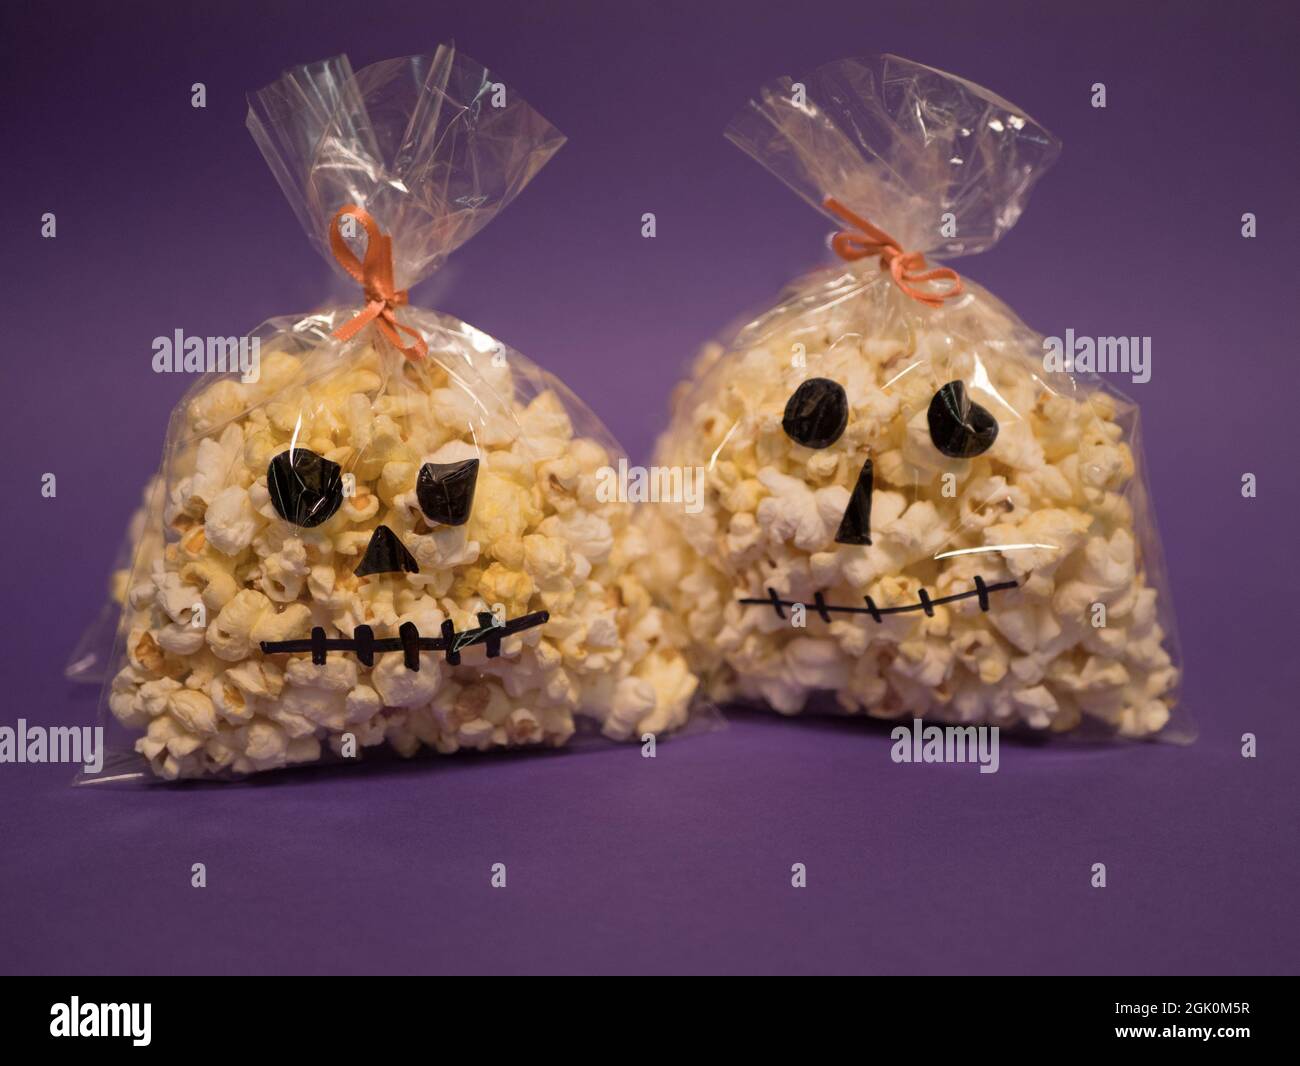 Sacchetti con popcorn sotto forma di teschi. Spuntini casalinghi